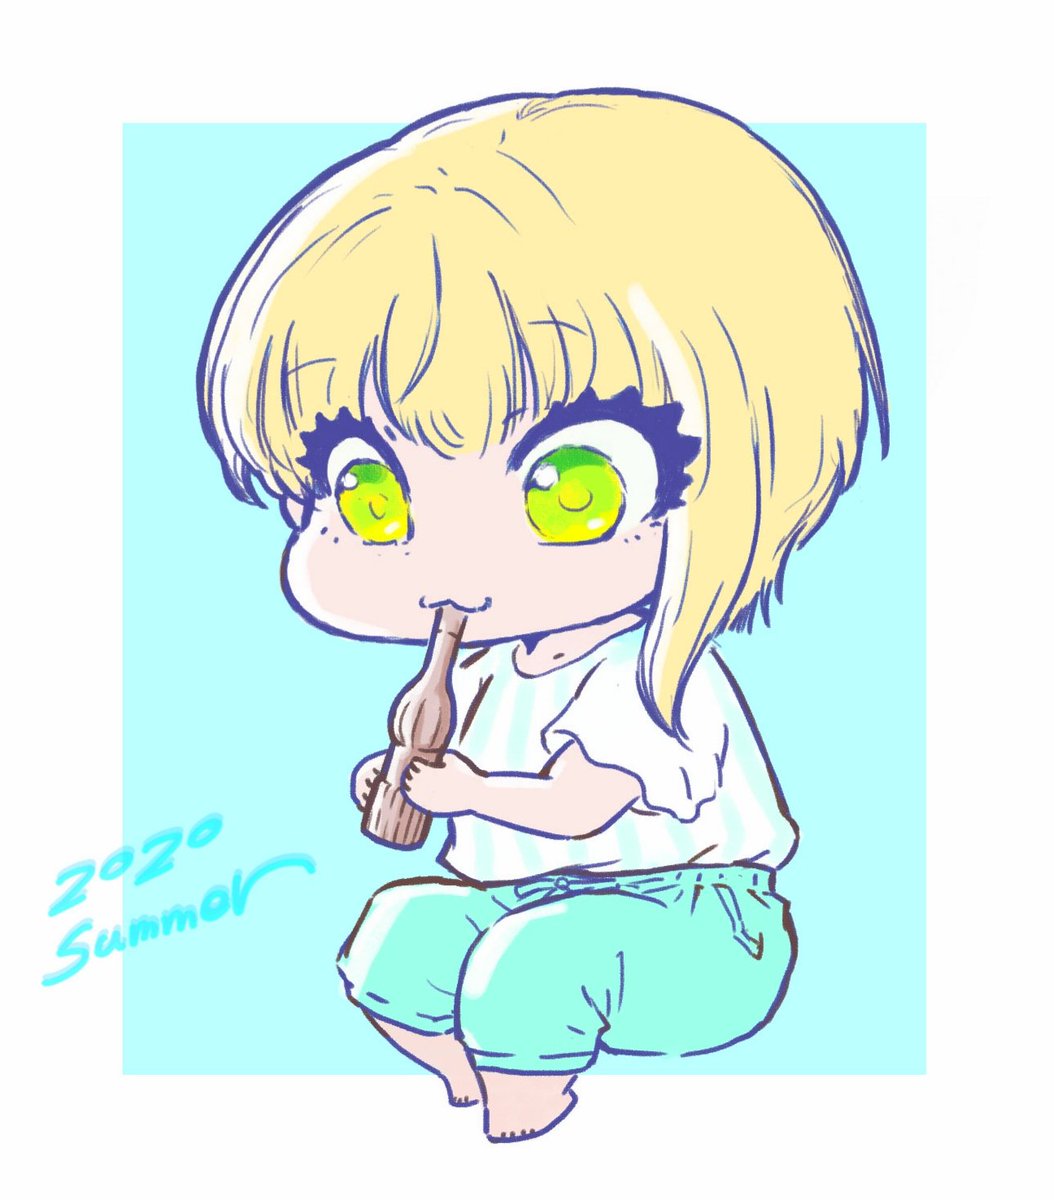 miyamoto frederica 1girl solo blonde hair chibi green eyes short hair shirt  illustration images